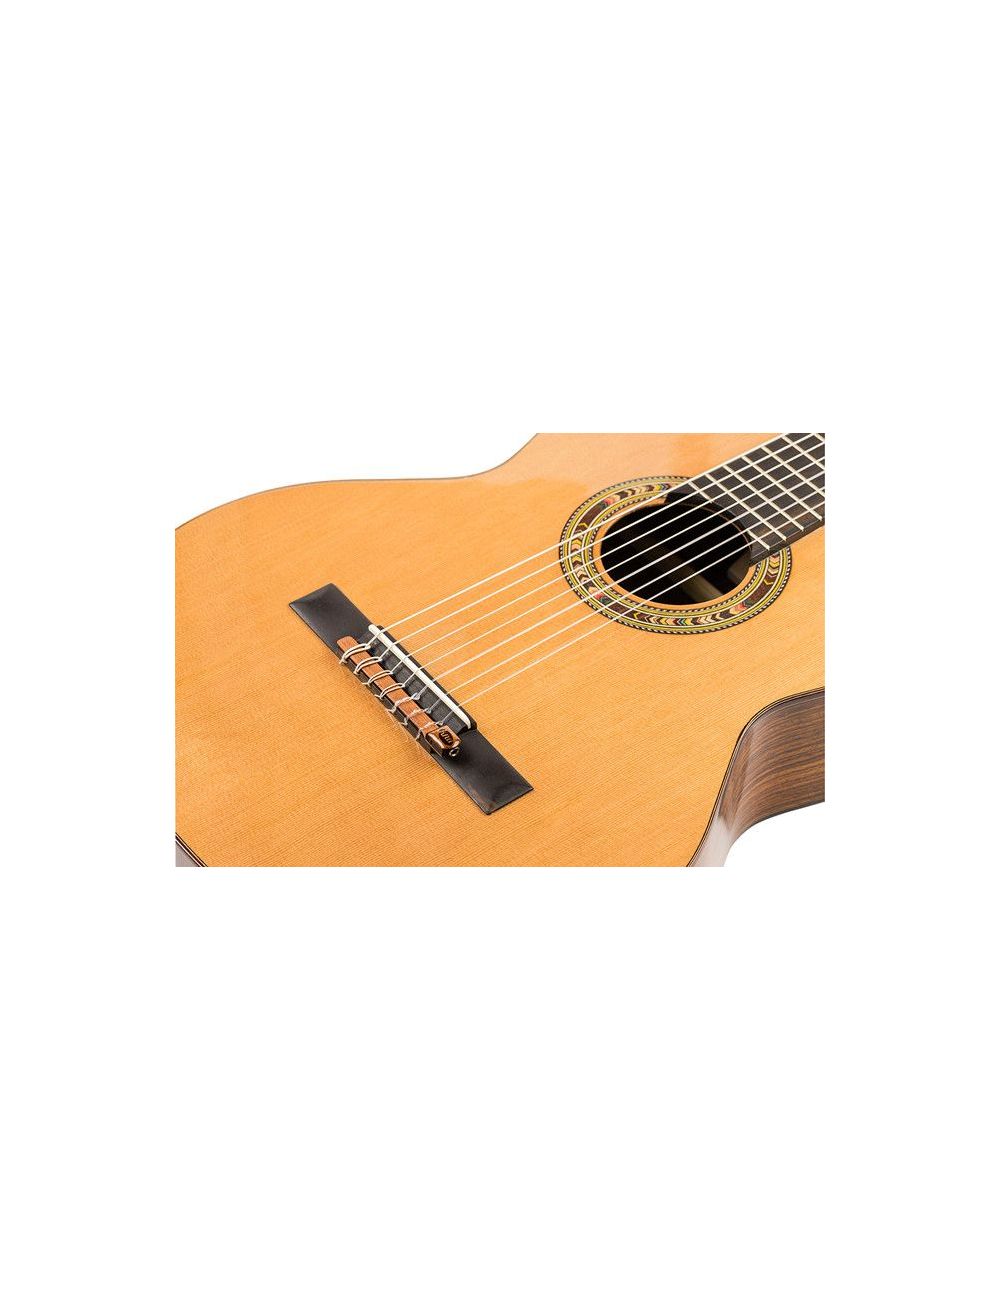 Kremona KNA NG-7 S Pastilla de guitarra clásica de 7 cuerdas